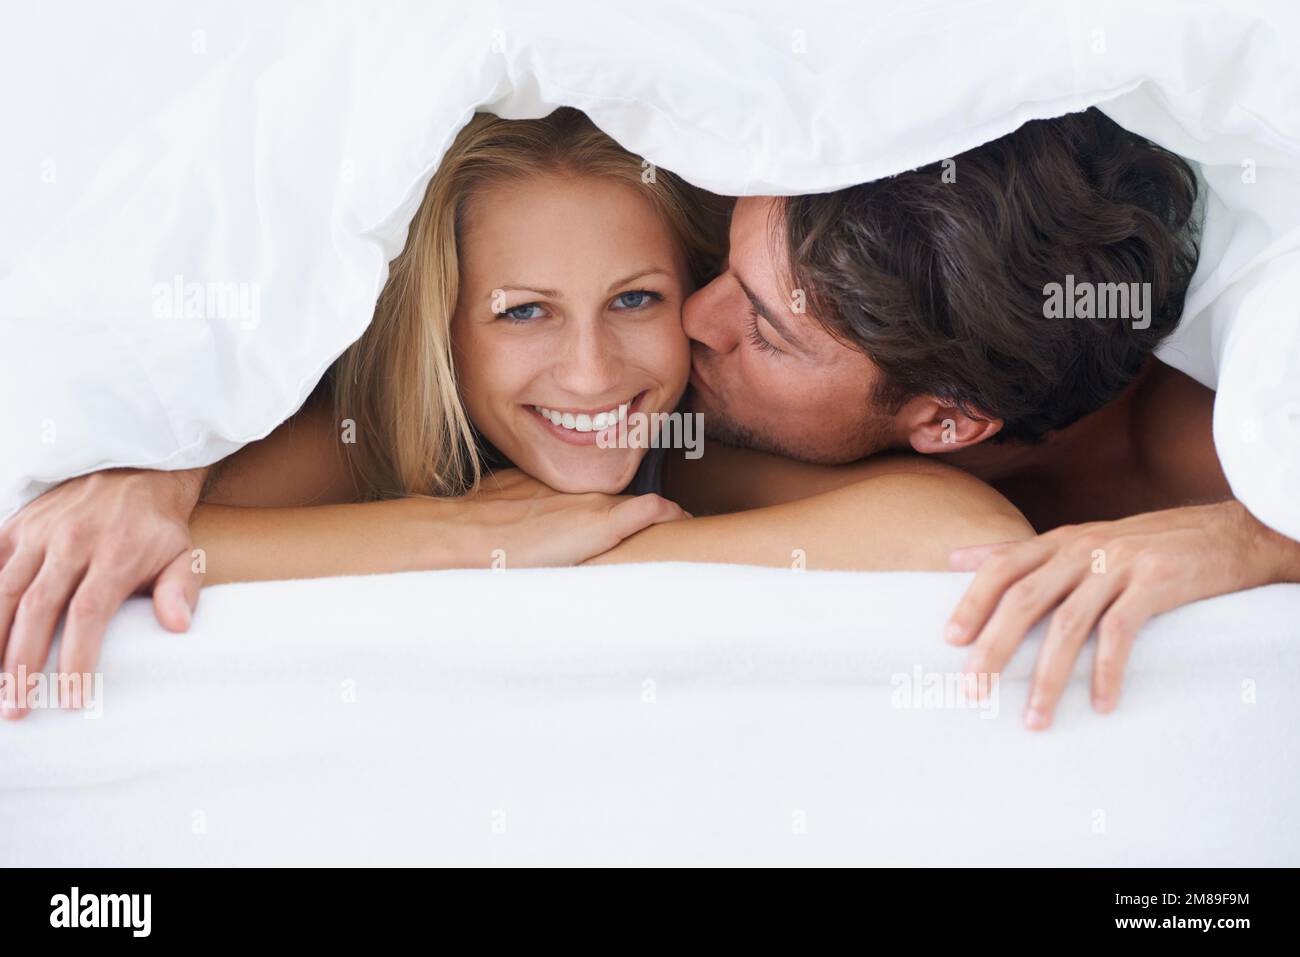 Glücklich mit ihrem Mann. Ein Mann, der eine lächelnde Frau auf die Wange küsst, während er auf einem Bett liegt und unter einem Bettbezug kuschelt. Stockfoto